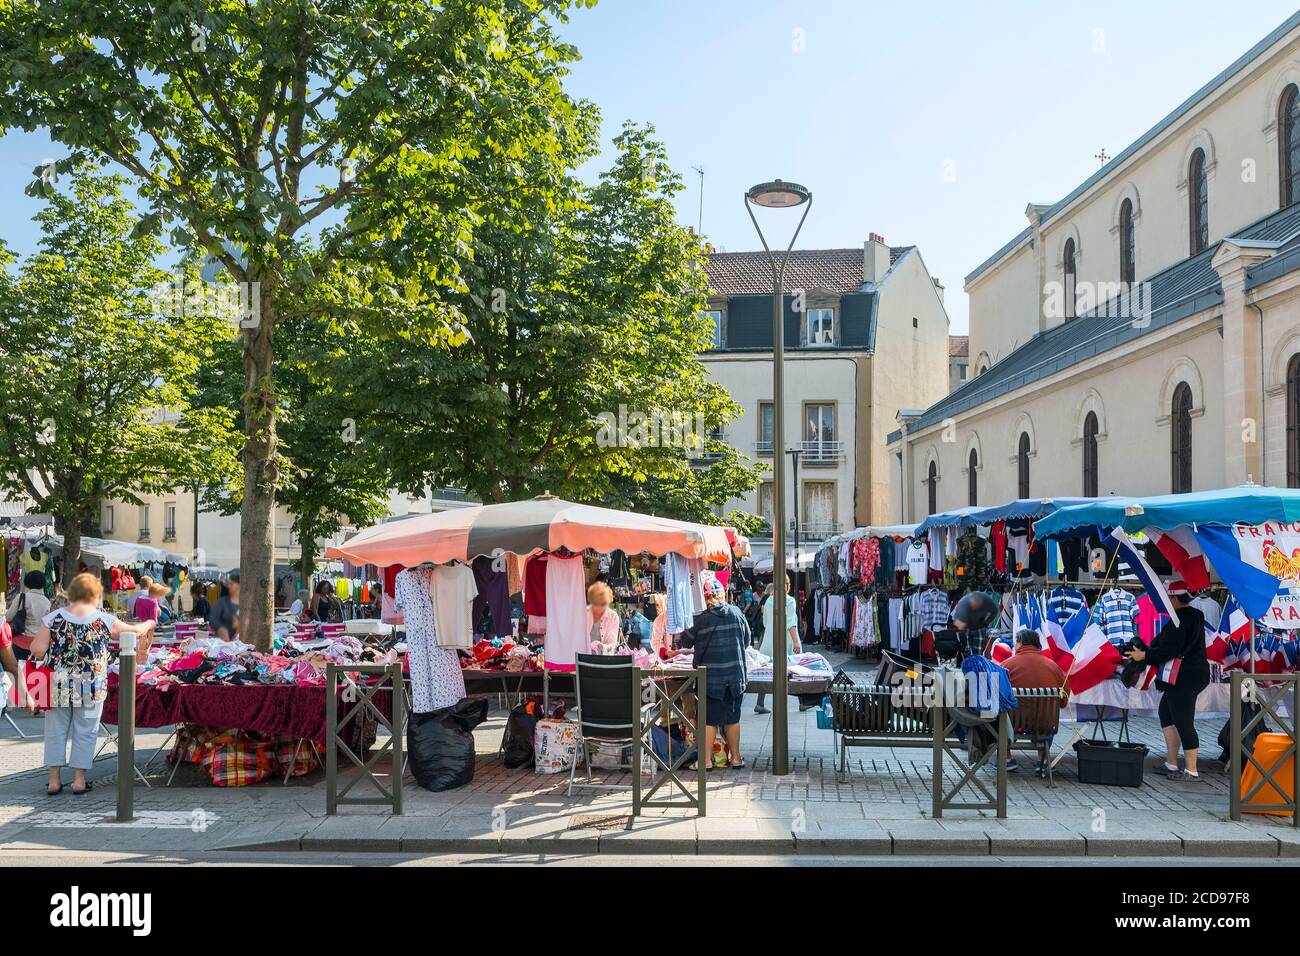 France, Seine Saint Denis, Rosny sous Bois, Place de l'Eglise market Stock Photo